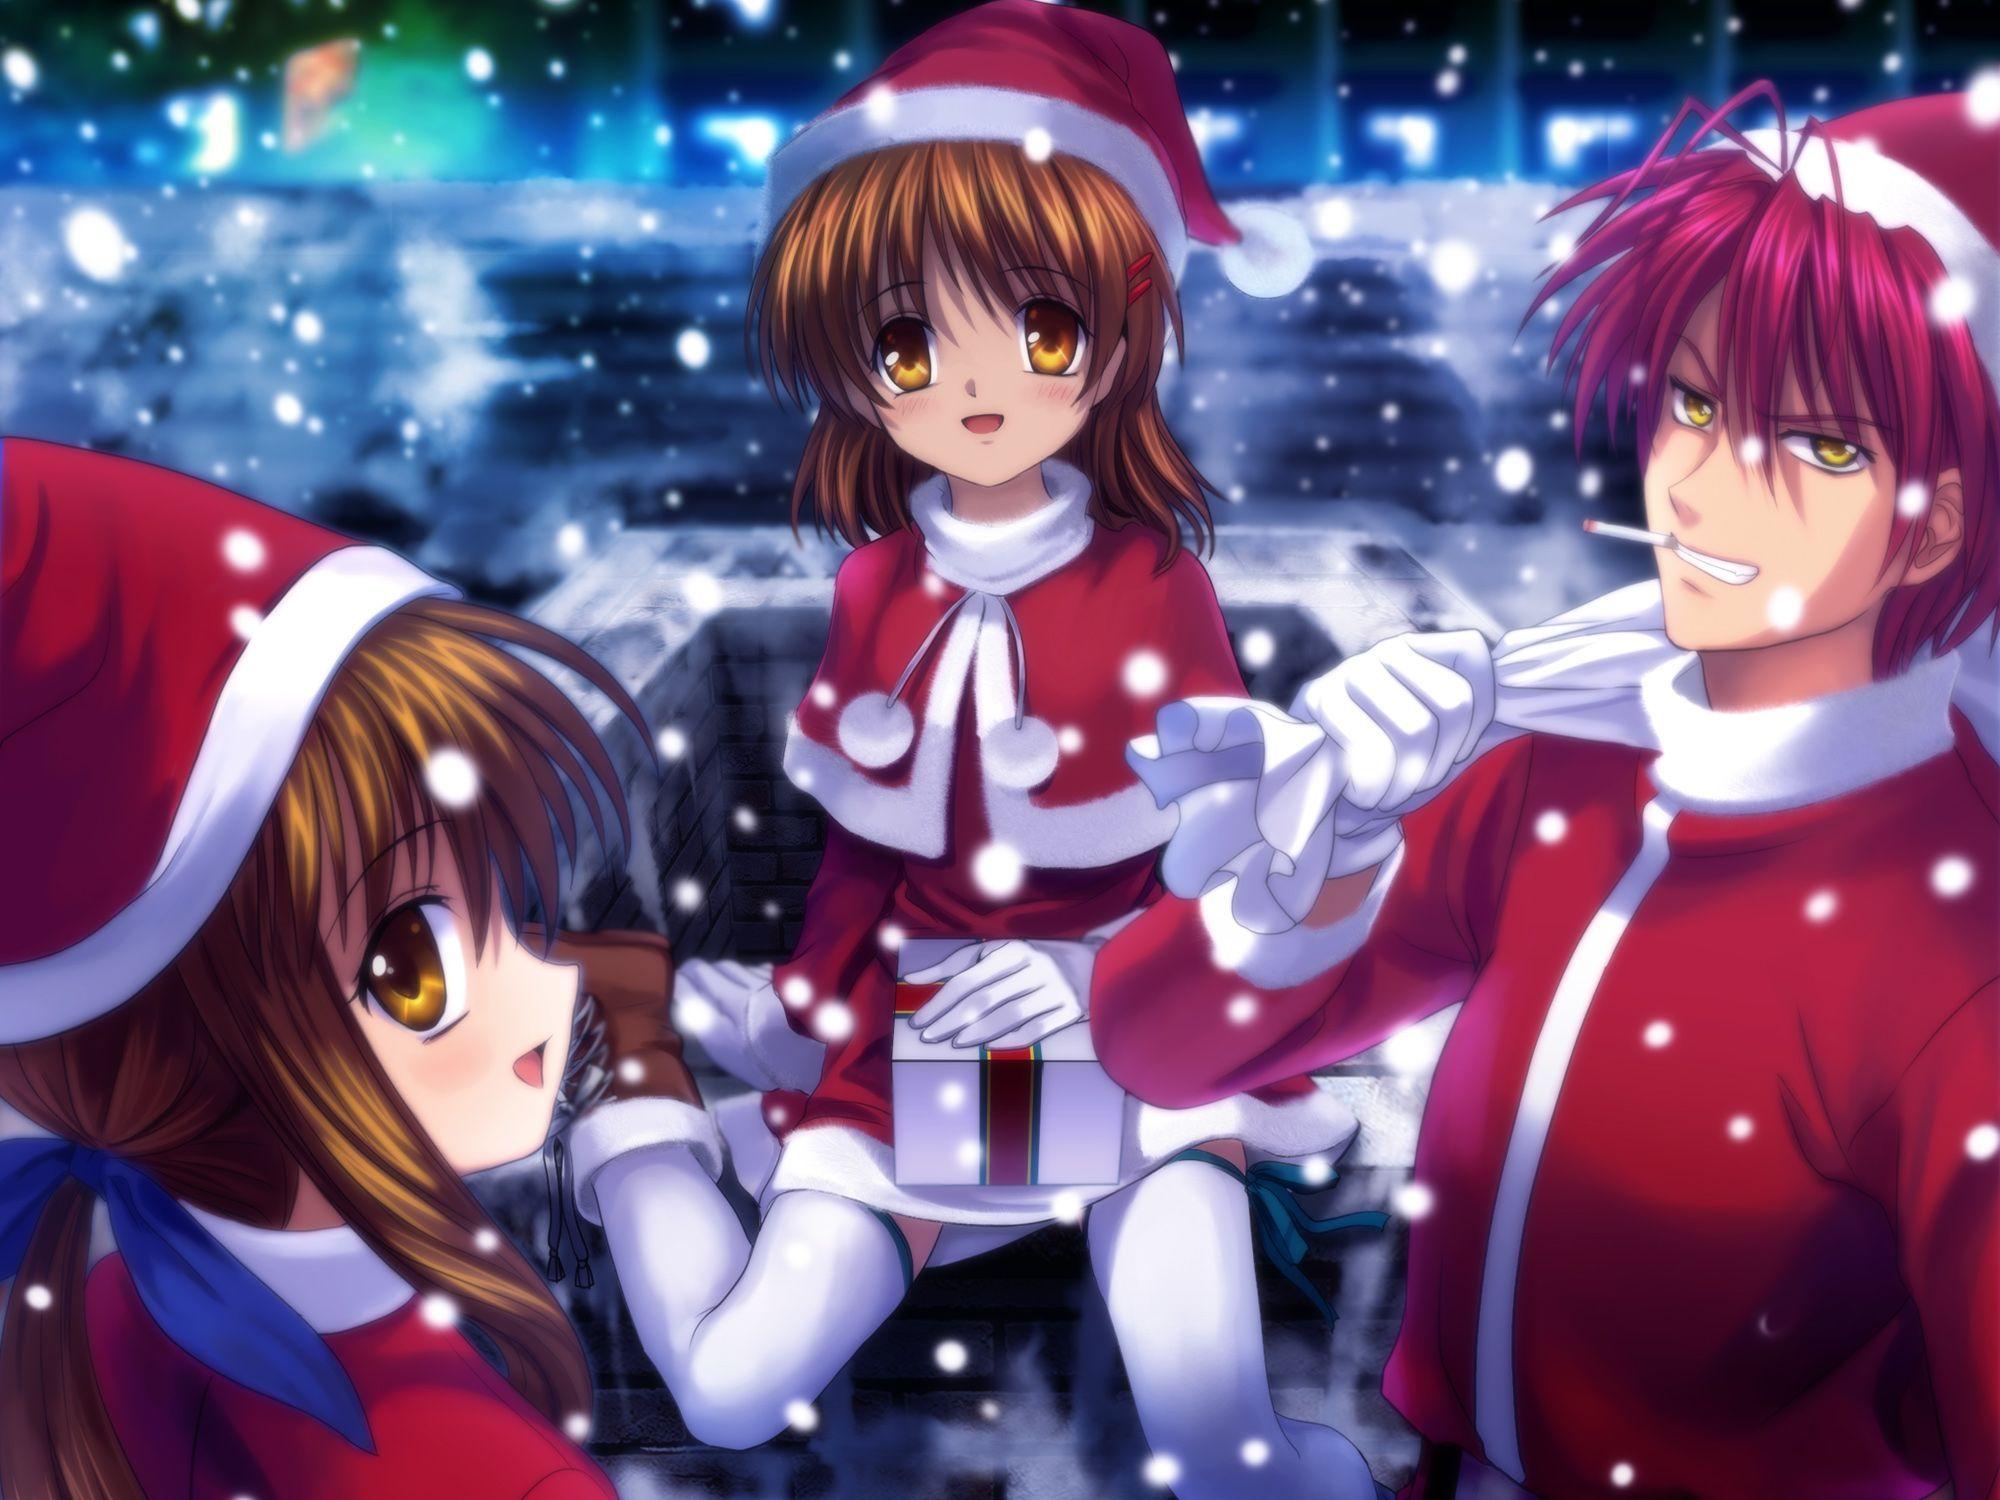 Anime Christmas Wallpaper Desktop. Anime, HD